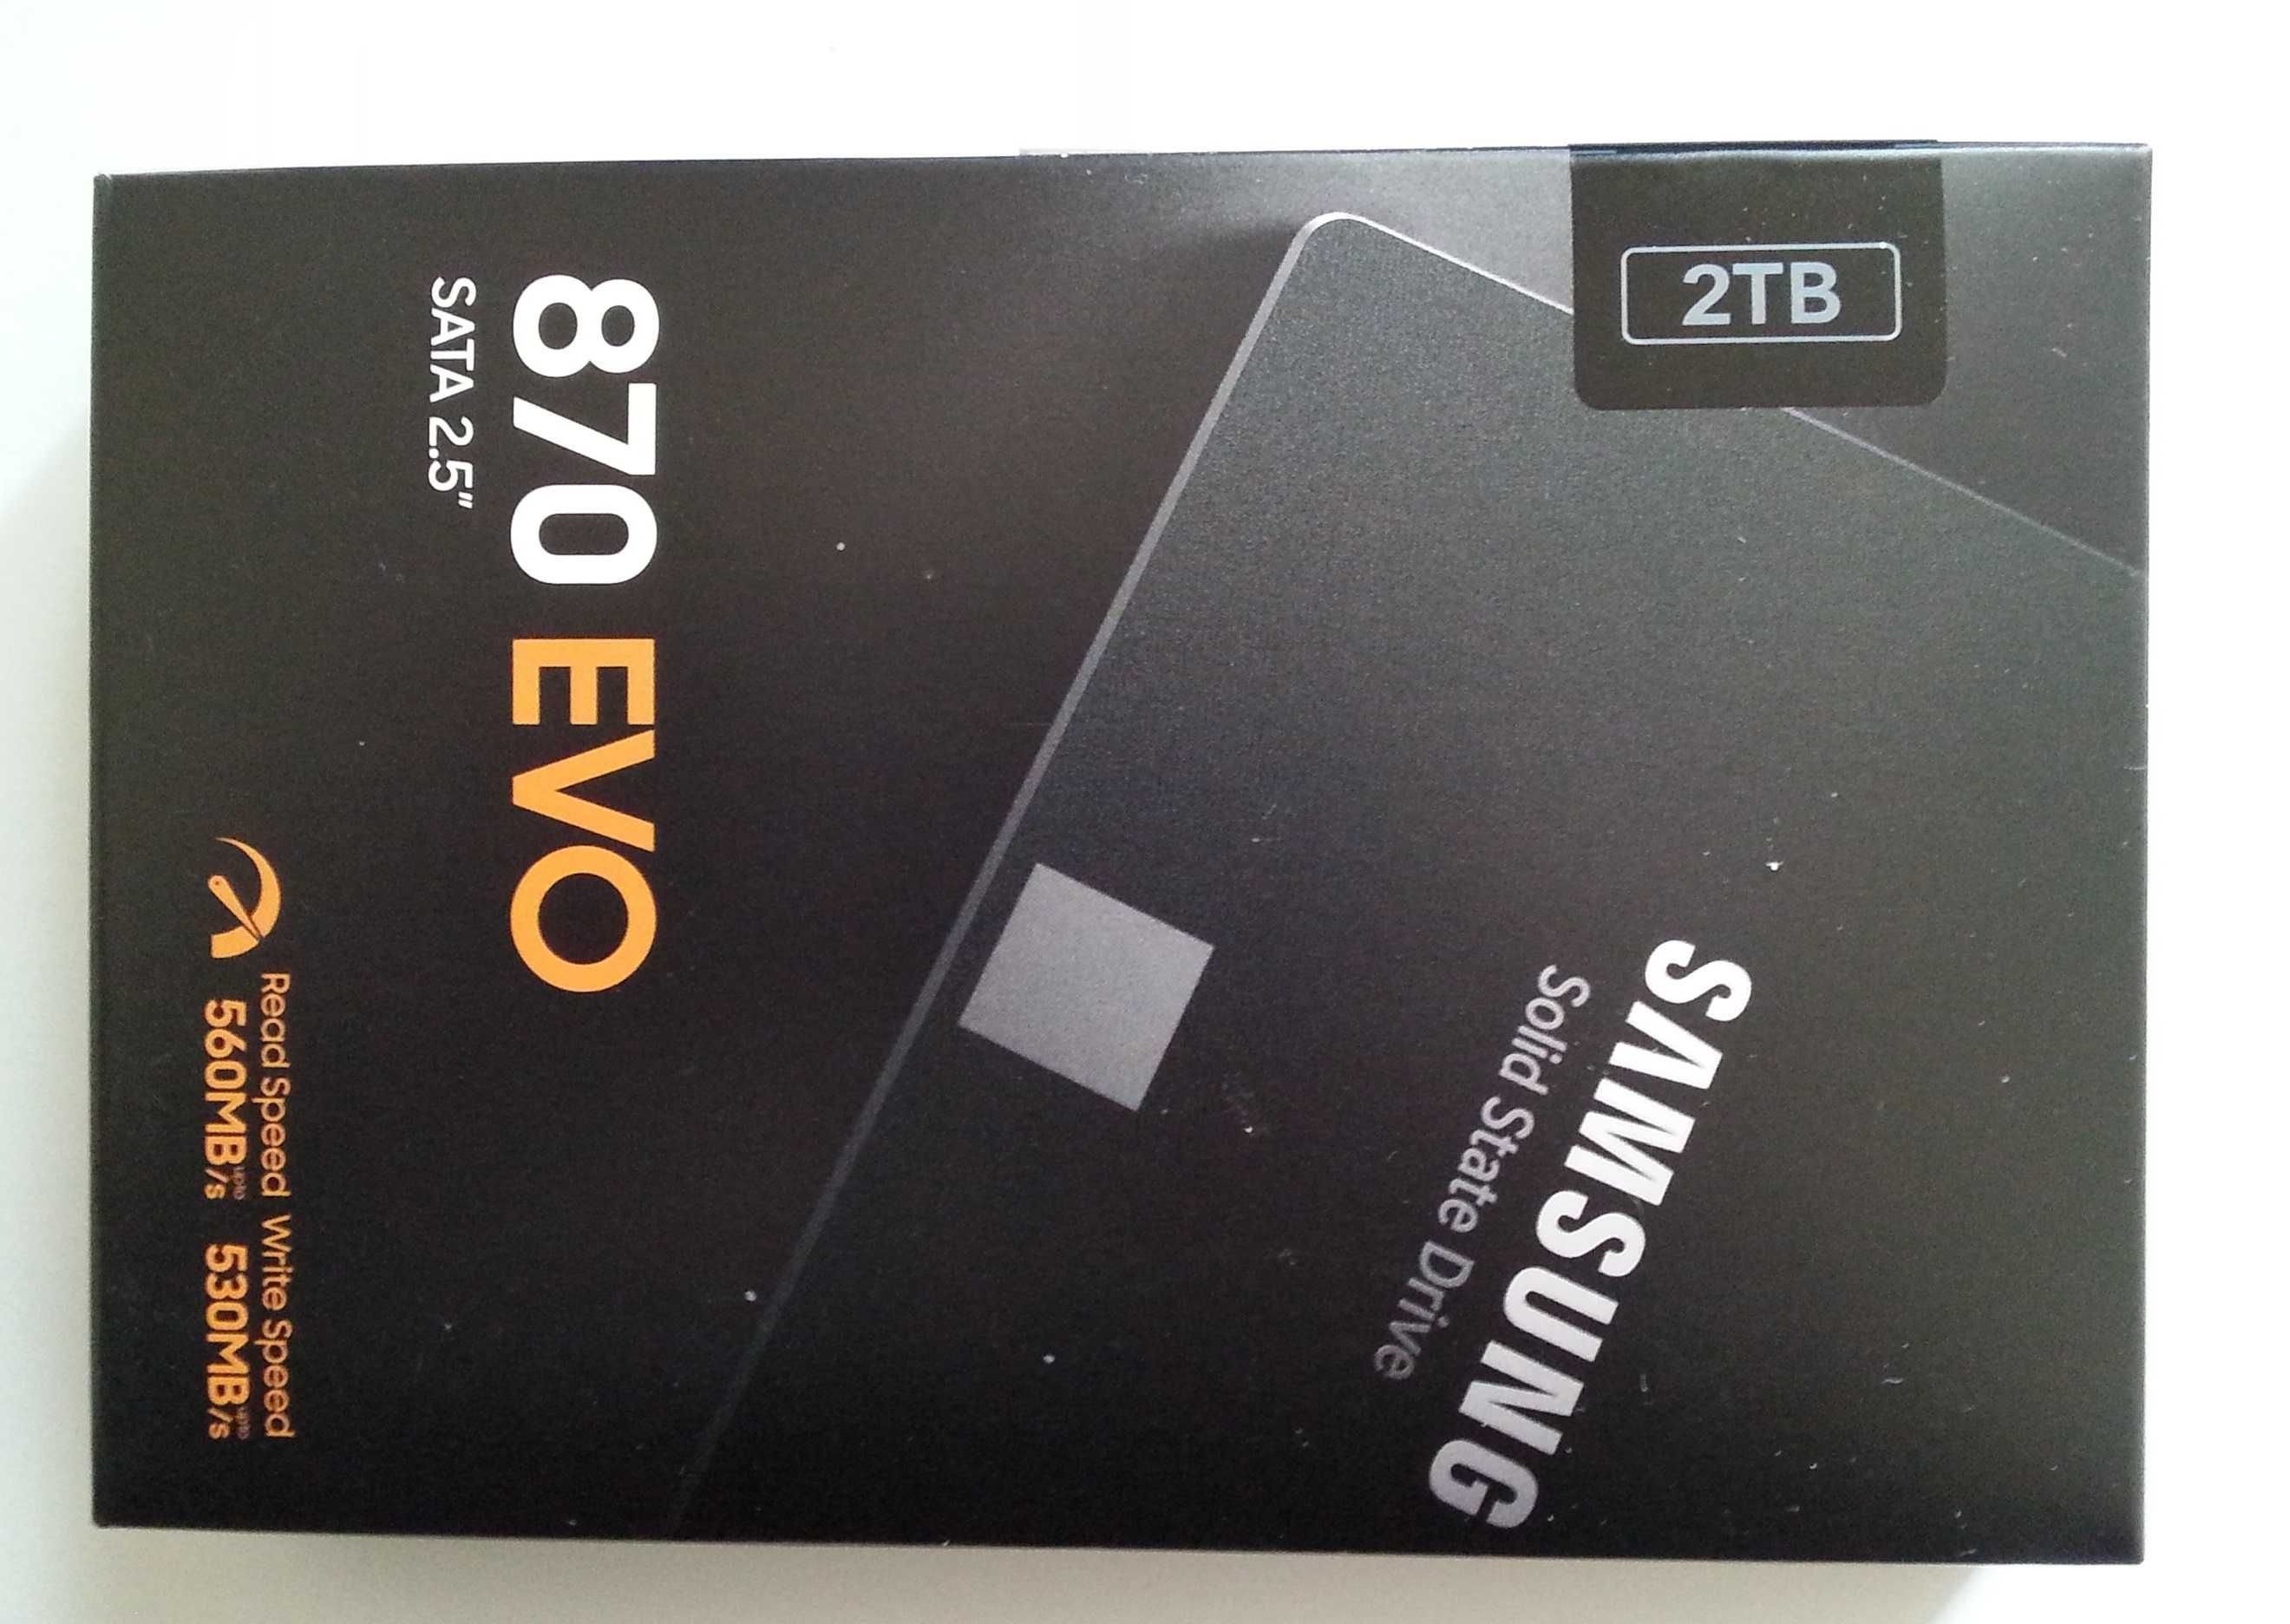 Konsola-graj 24h.Samsung serwerowy-nowy-240gb.SSD-dysk.